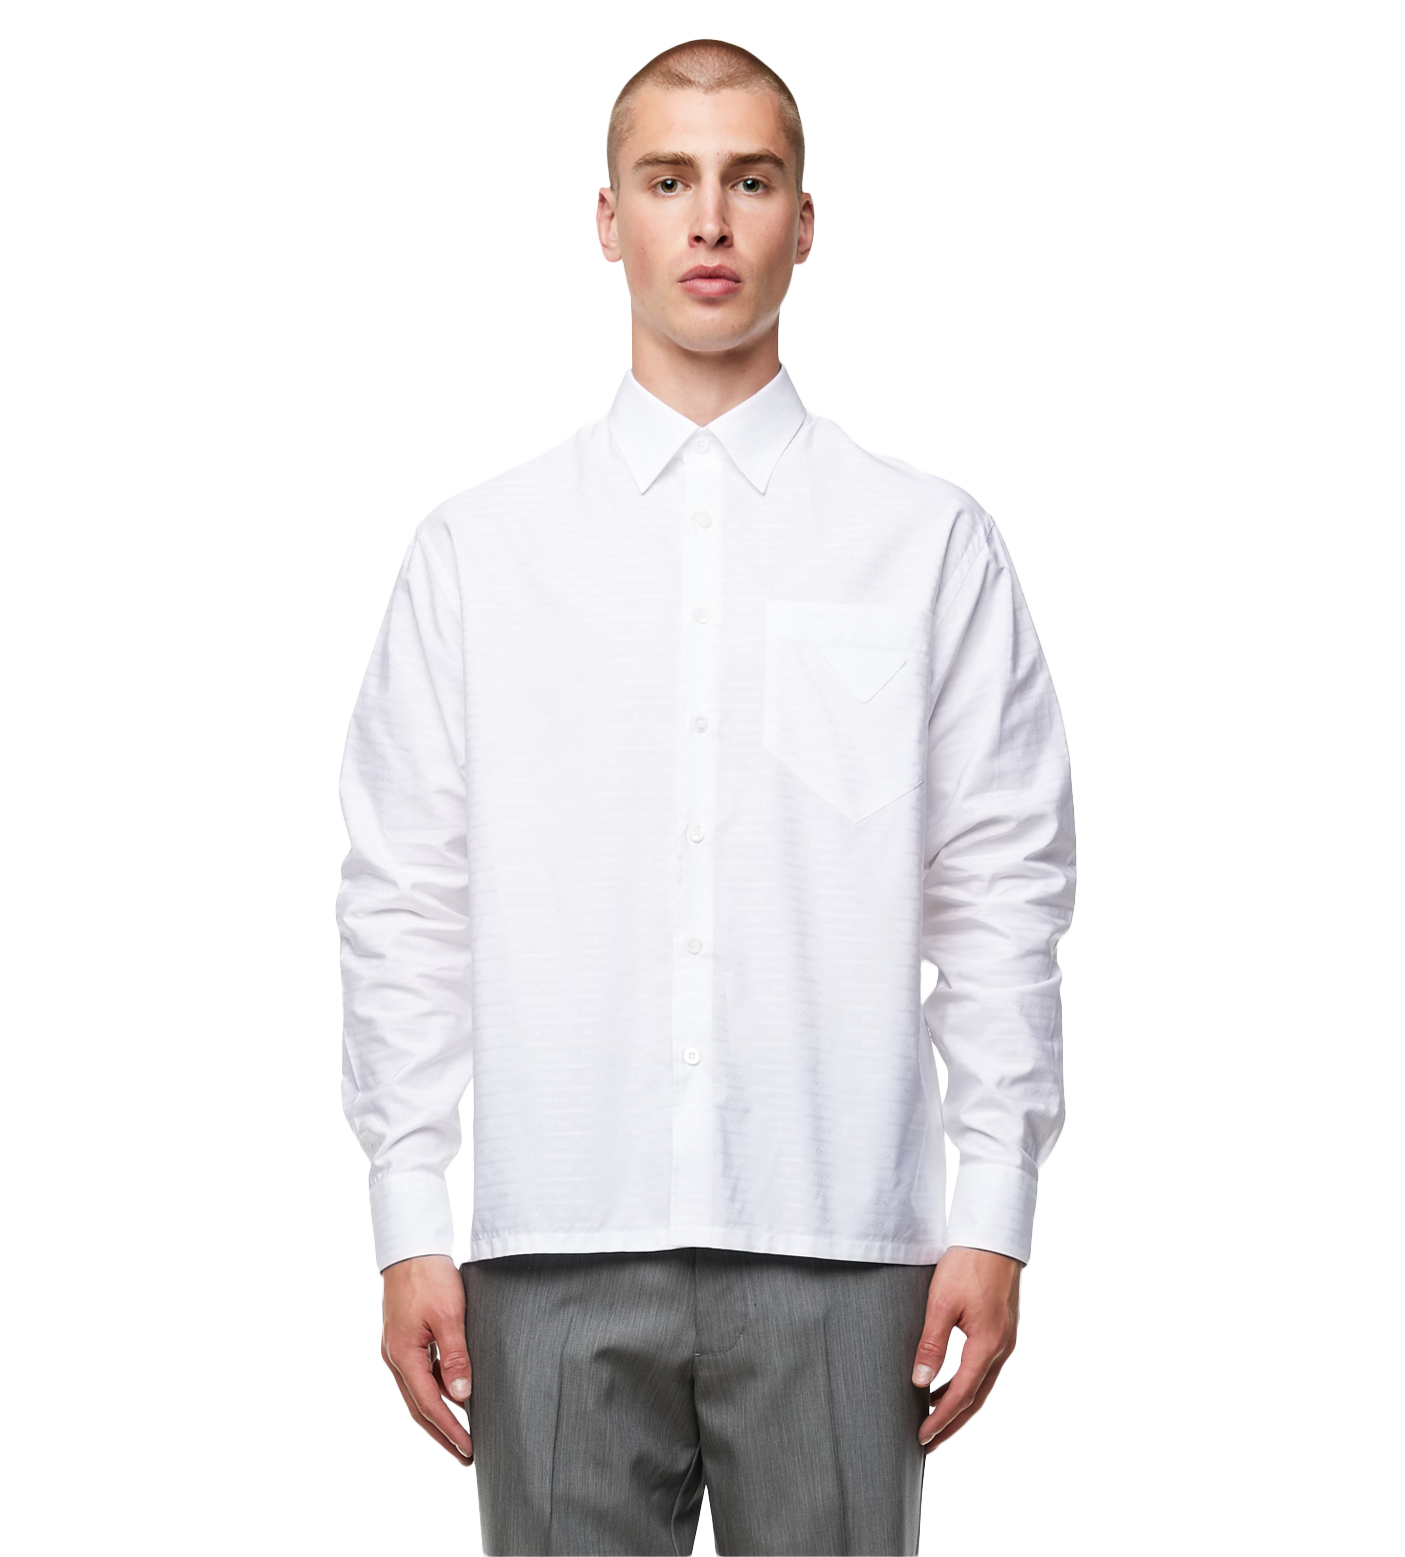 Long Sleeved Shirt White